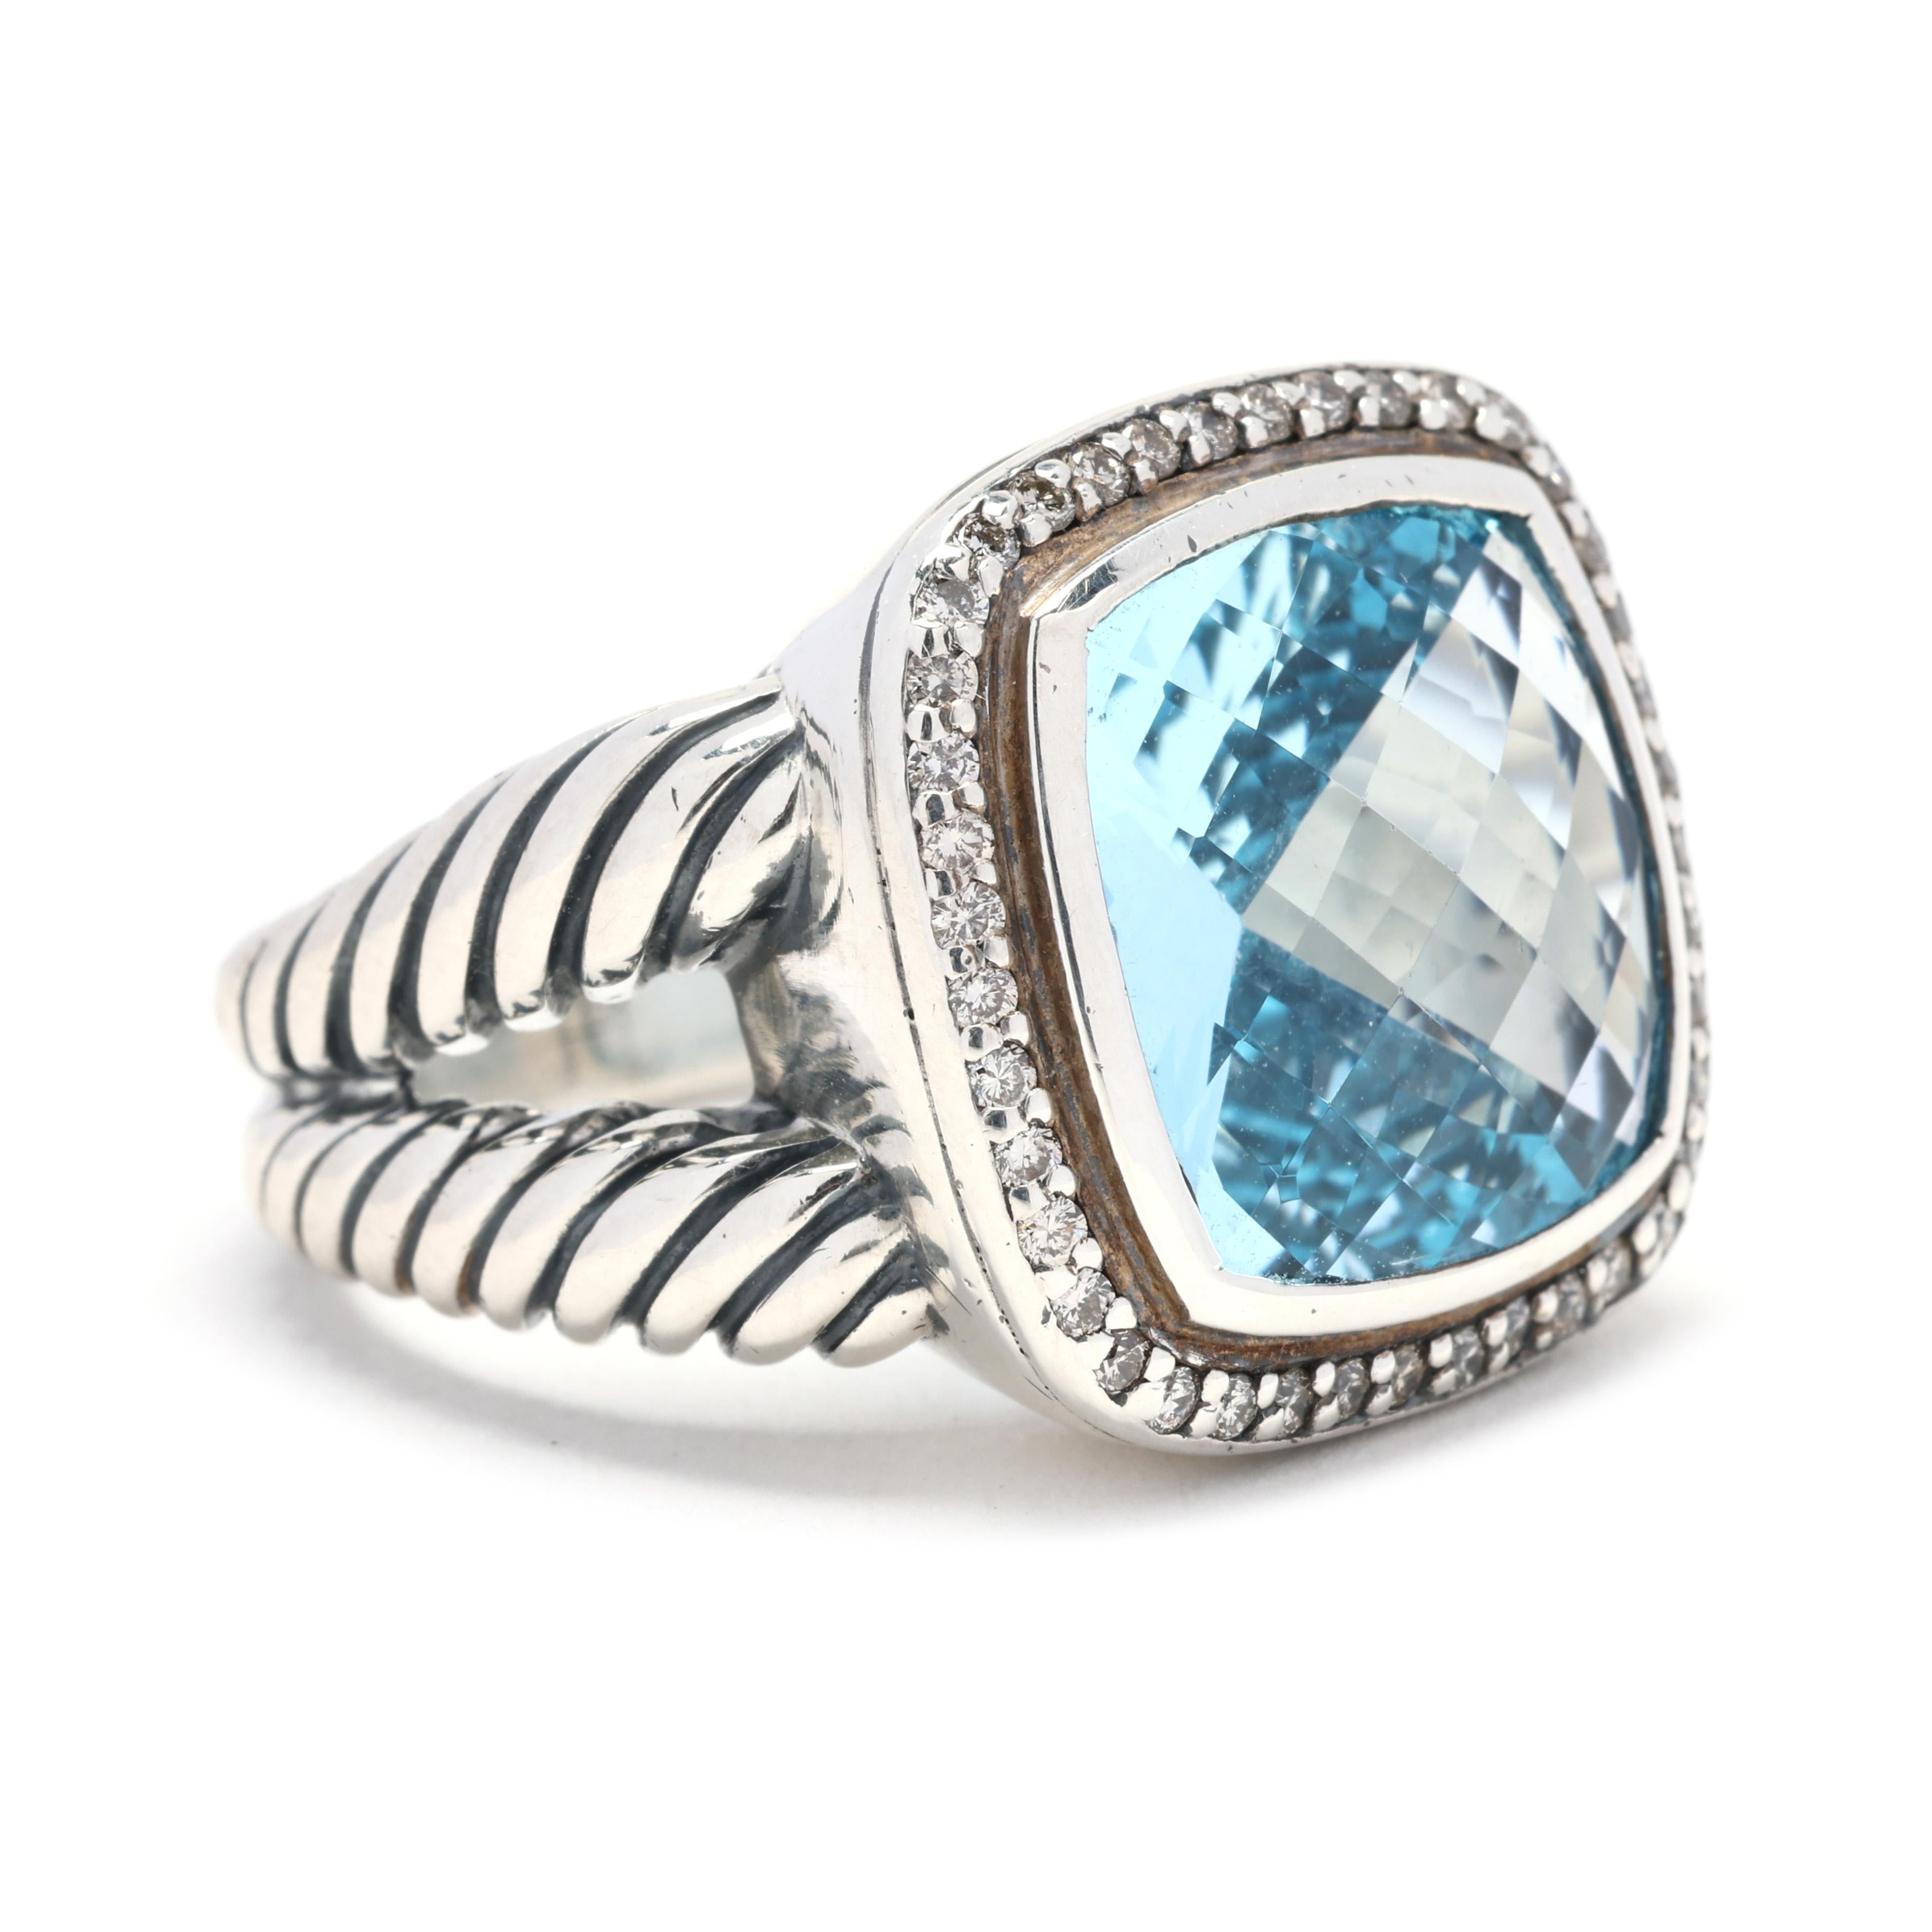 Dieser prächtige 13,85ctw Blautopas- und Diamantring von David Yurman ist ein echtes Statement. Der Ring ist aus Sterlingsilber mit Akzenten aus 18 Karat Weißgold gefertigt und bildet einen schönen Kontrast. Das Herzstück des Rings ist ein